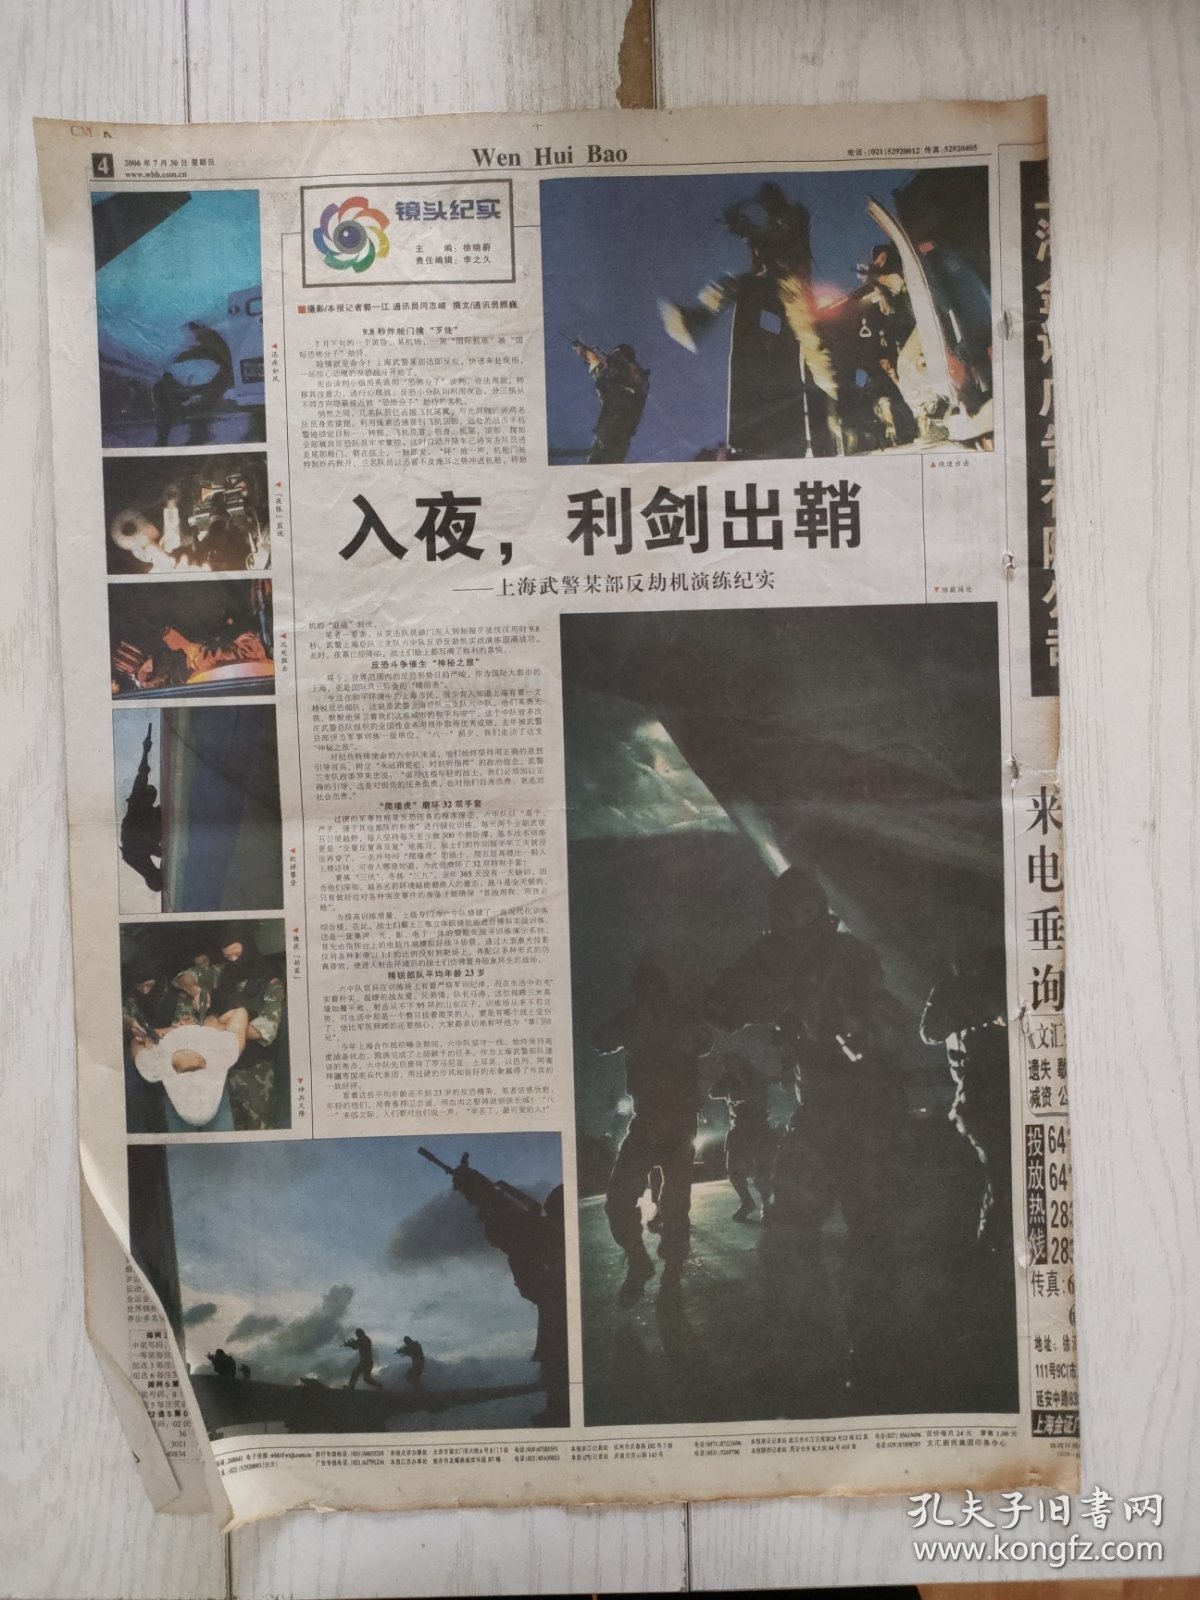 文汇报2006年7月30日8版缺，南京房产假赠与猛增。上海武警某部反劫机演练记实。